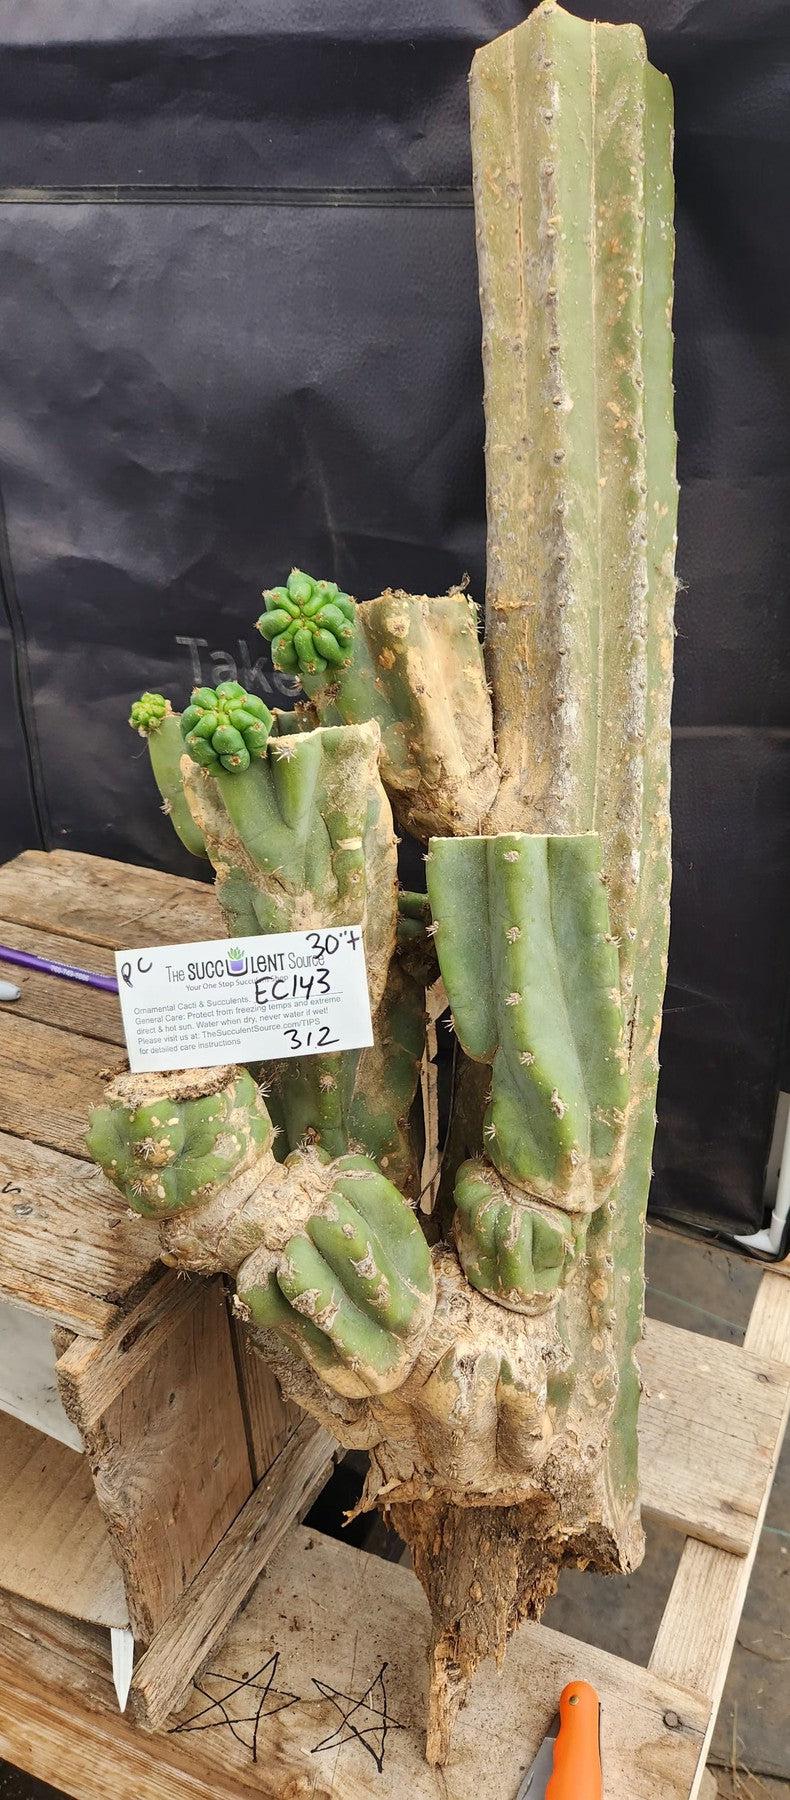 #EC143 EXACT Trichocereus Pachanoi PC Cactus Cutting 30"